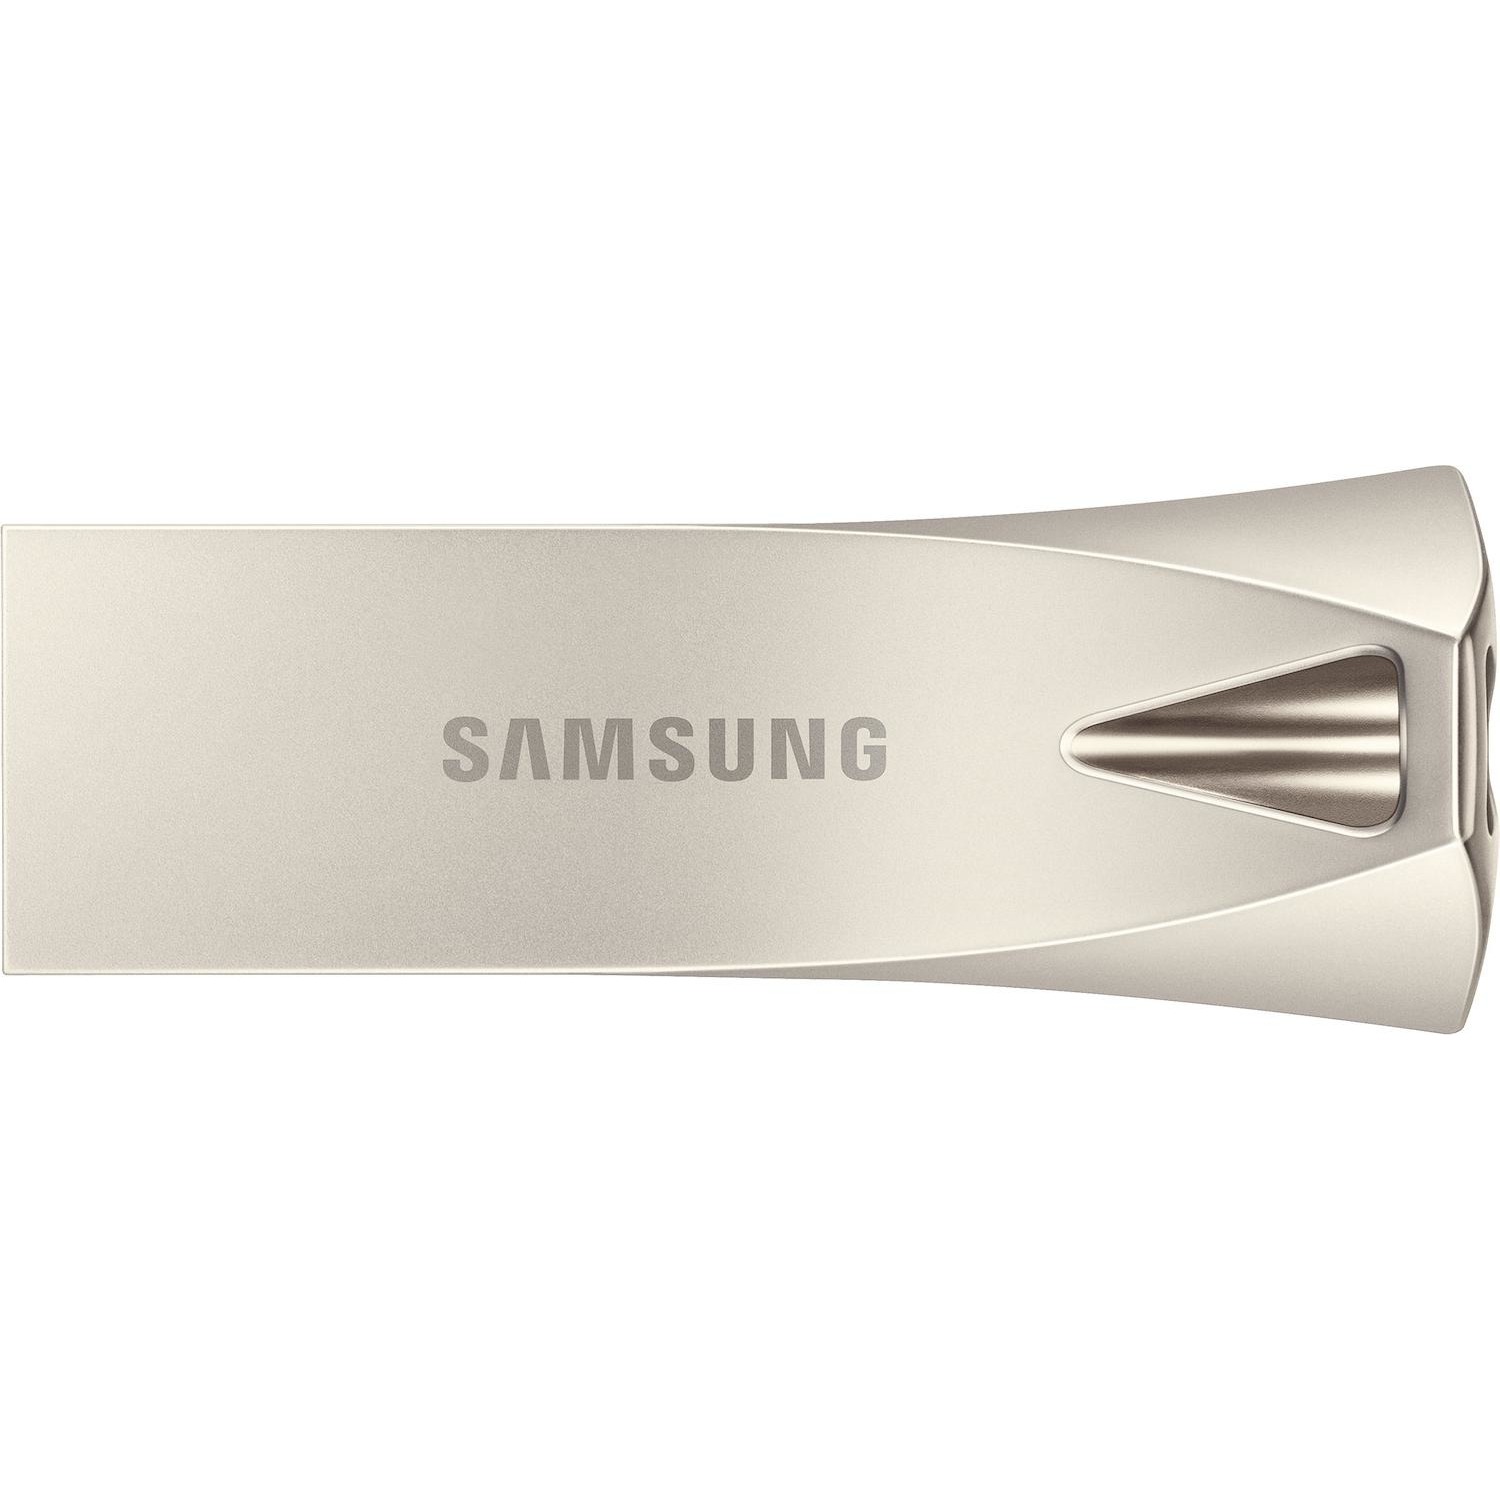 Immagine per Pen drive Samsung 64GB USB 3.1 champagne da DIMOStore